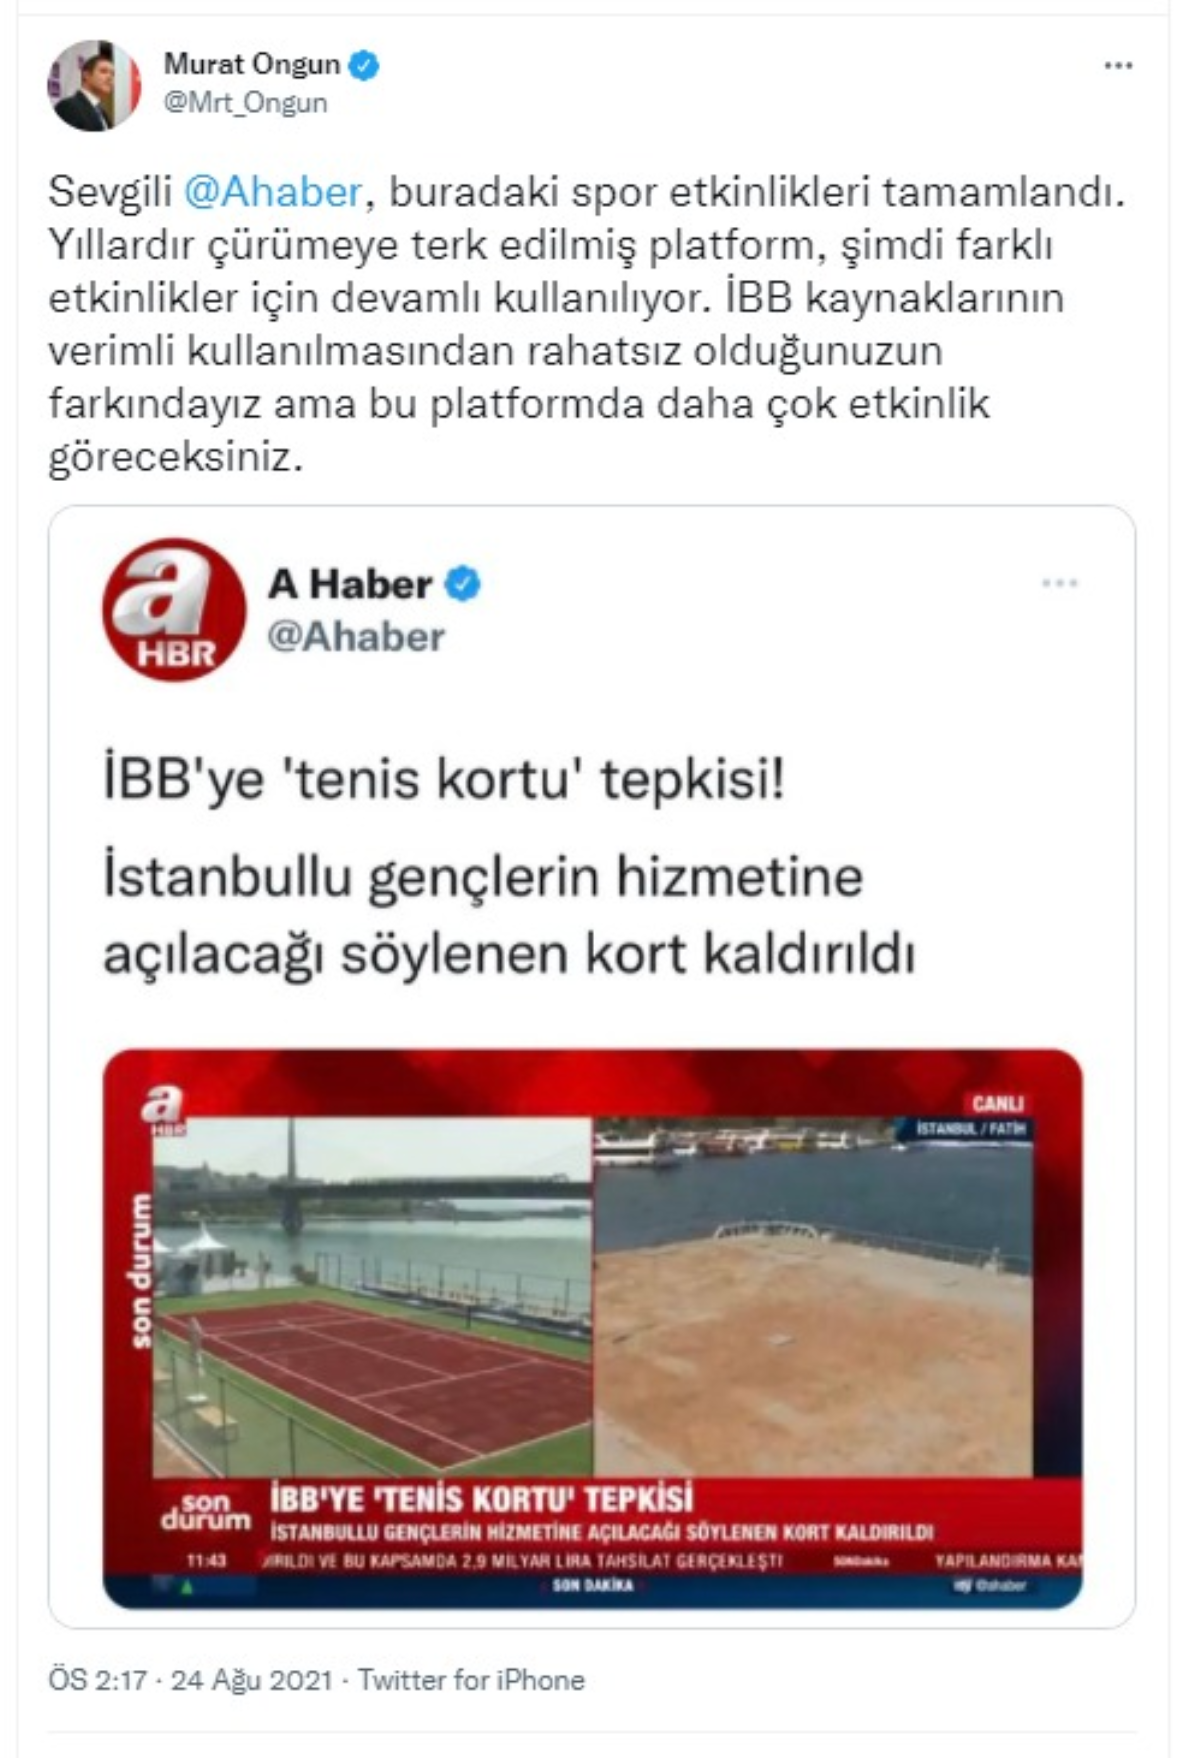 A haberin 'tenis kortu' iddiasına Murat Ongun'dan yanıt